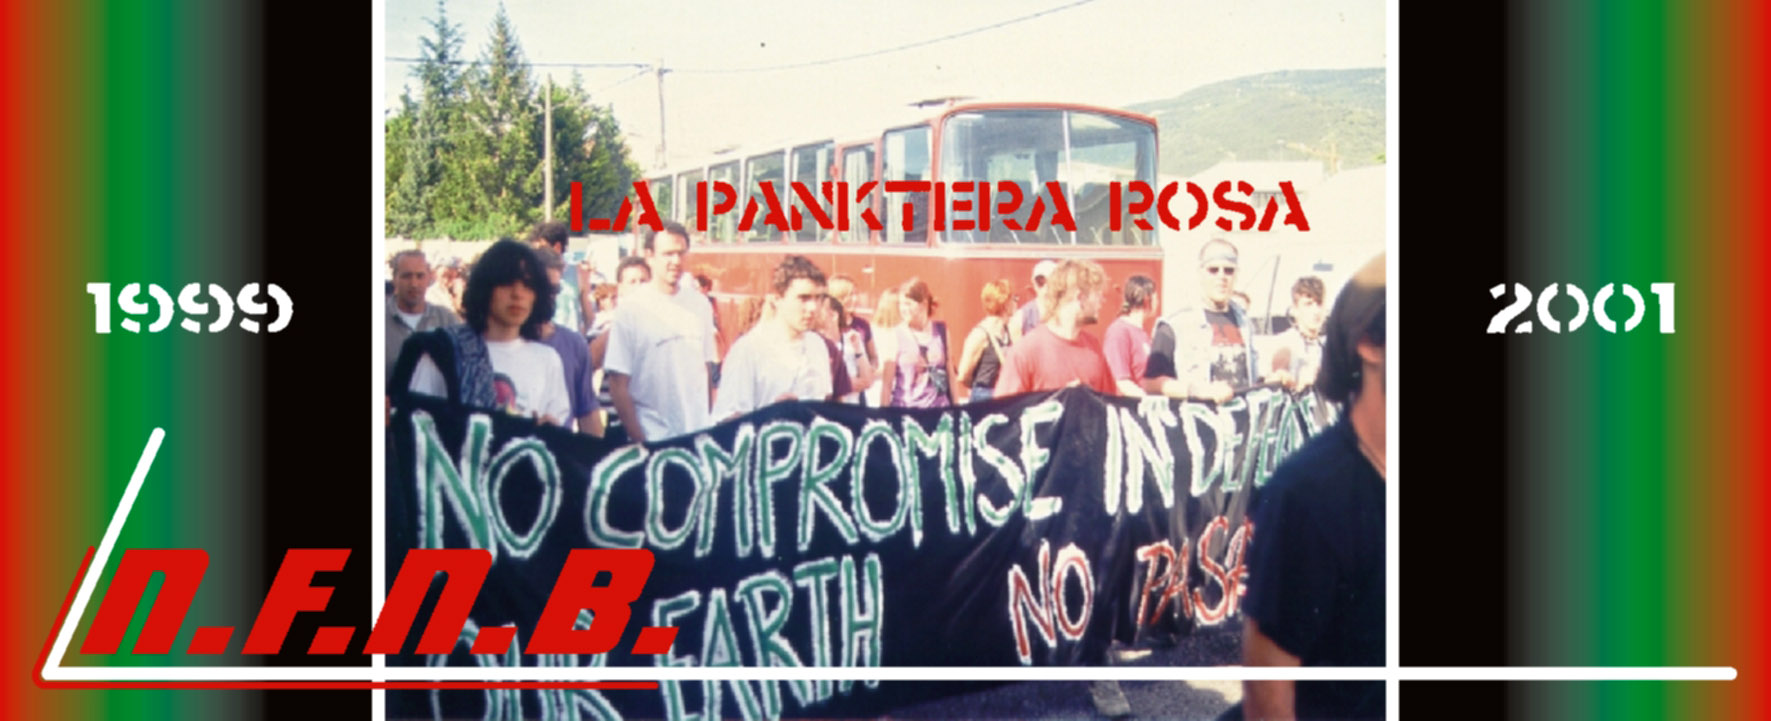 A la derecha Patxi, junto al colectivo anarkopunk LA PANKTERA ROSA, manifestándose contra la construcción de la presa del embalse de Itoiz (2001)